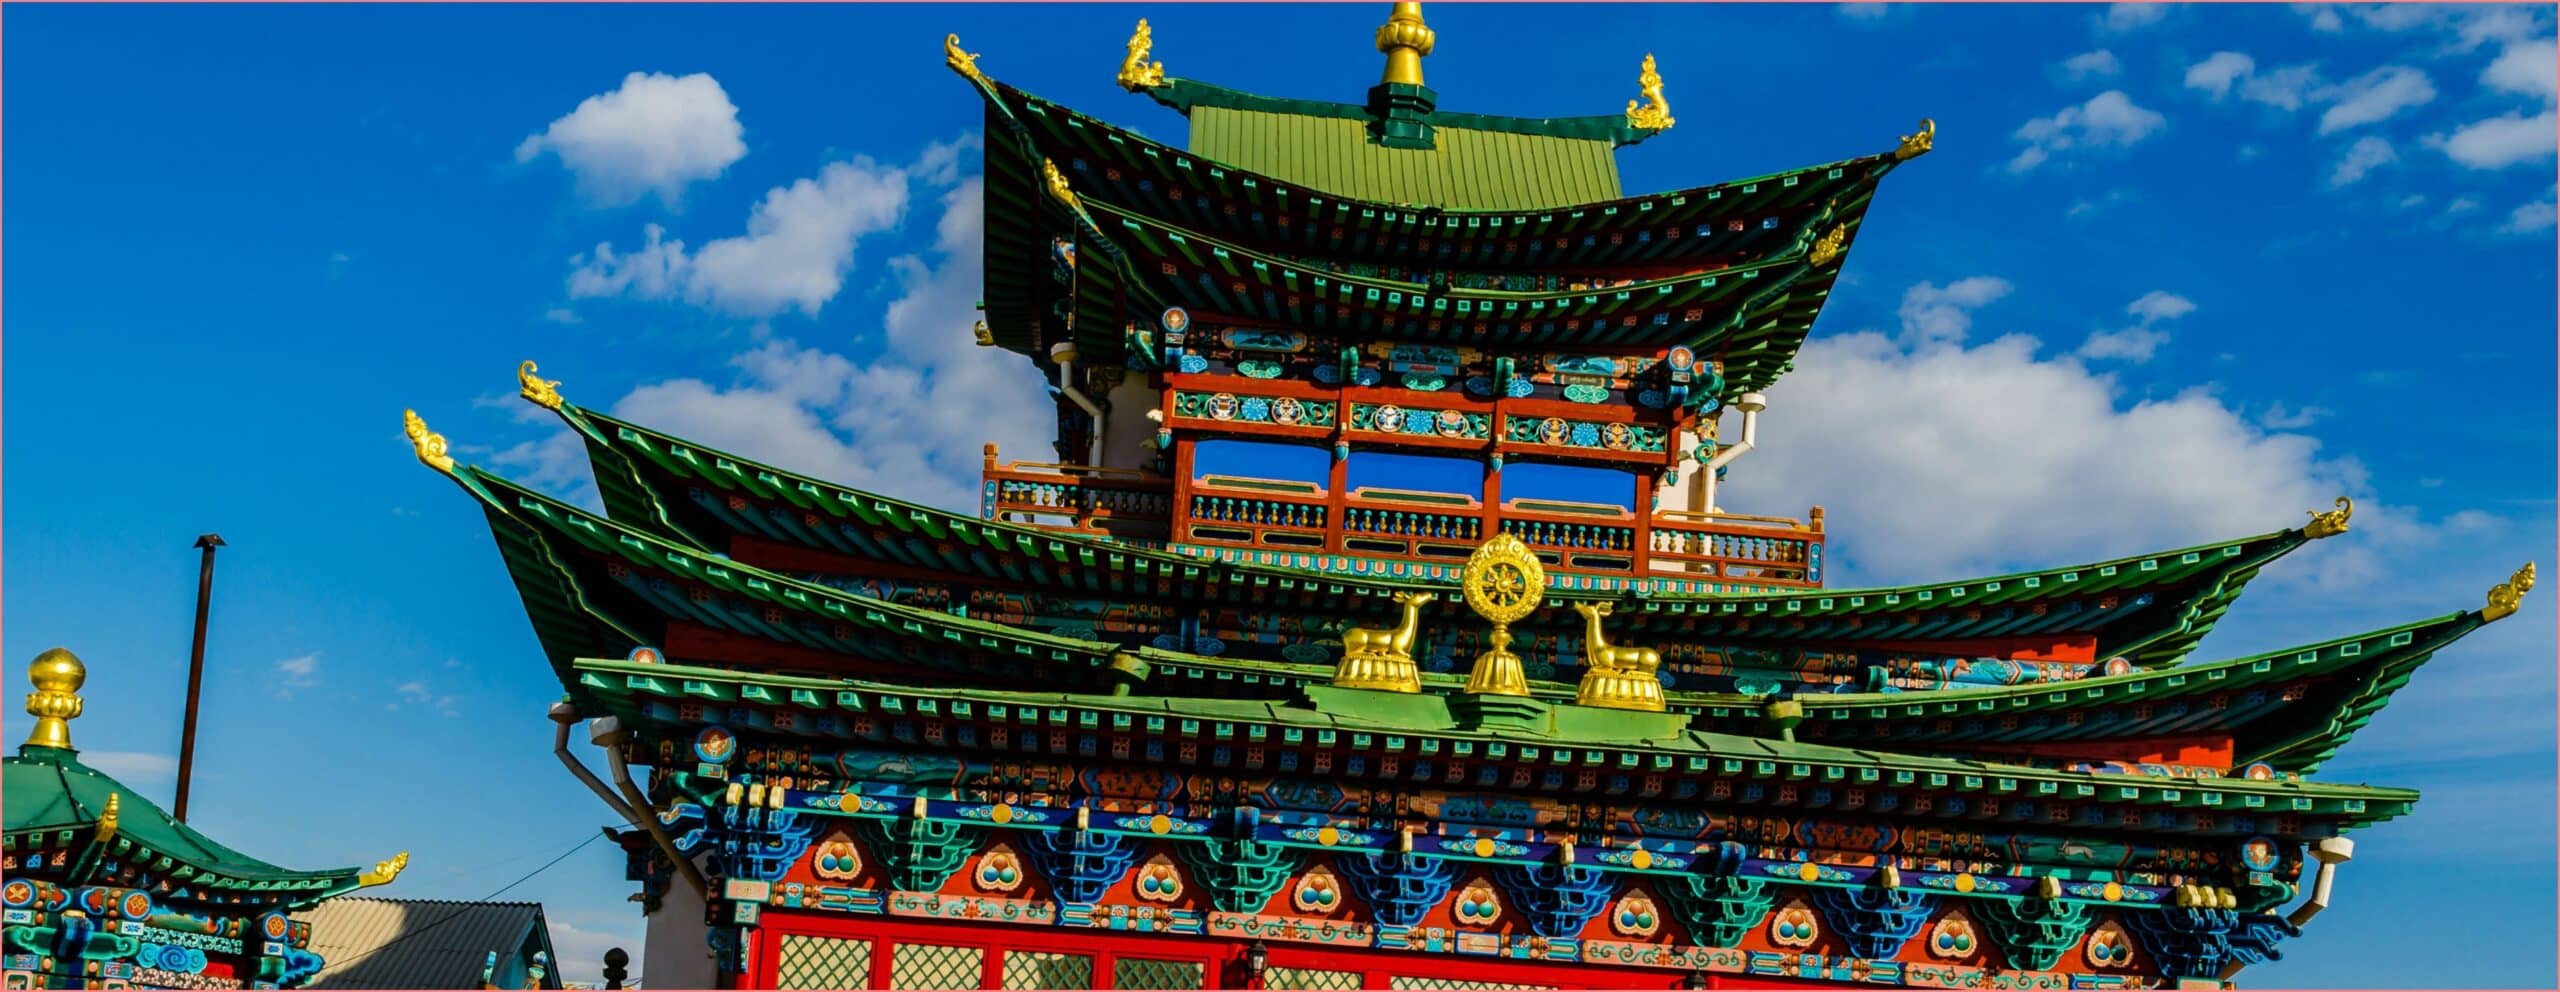 Улан-Удэ - 10 лучших достопримечательностей буддийского города Улан-Удэ можно